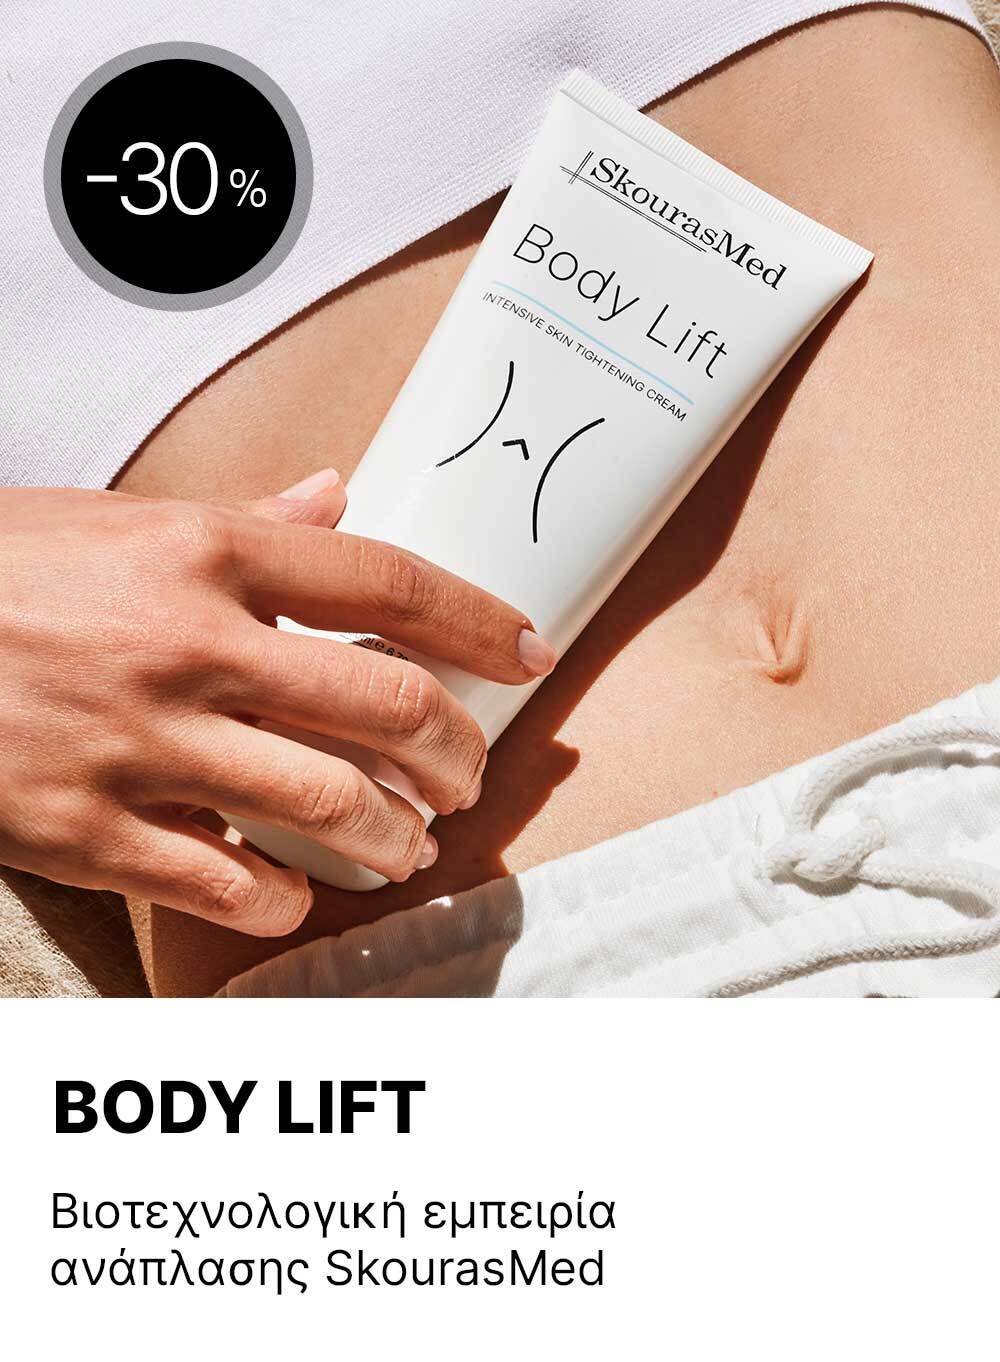 Body Lift Offer